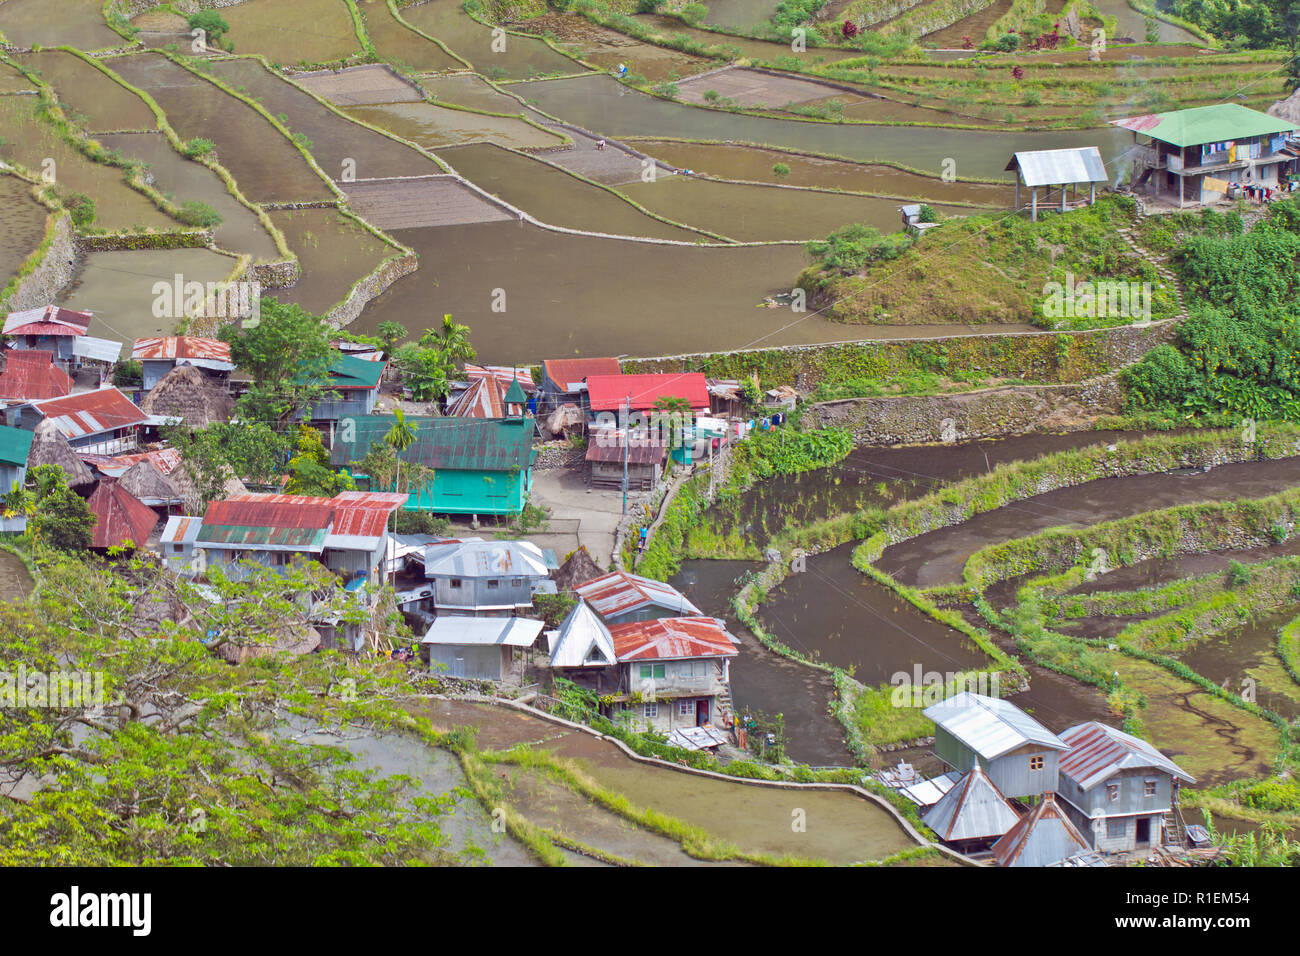 Batad è un remoto villaggio di circa 1500 persone nella provincia di Ifugao. Ha detto di essere a casa per il migliore e il più ben conservato terrazze di riso Foto Stock